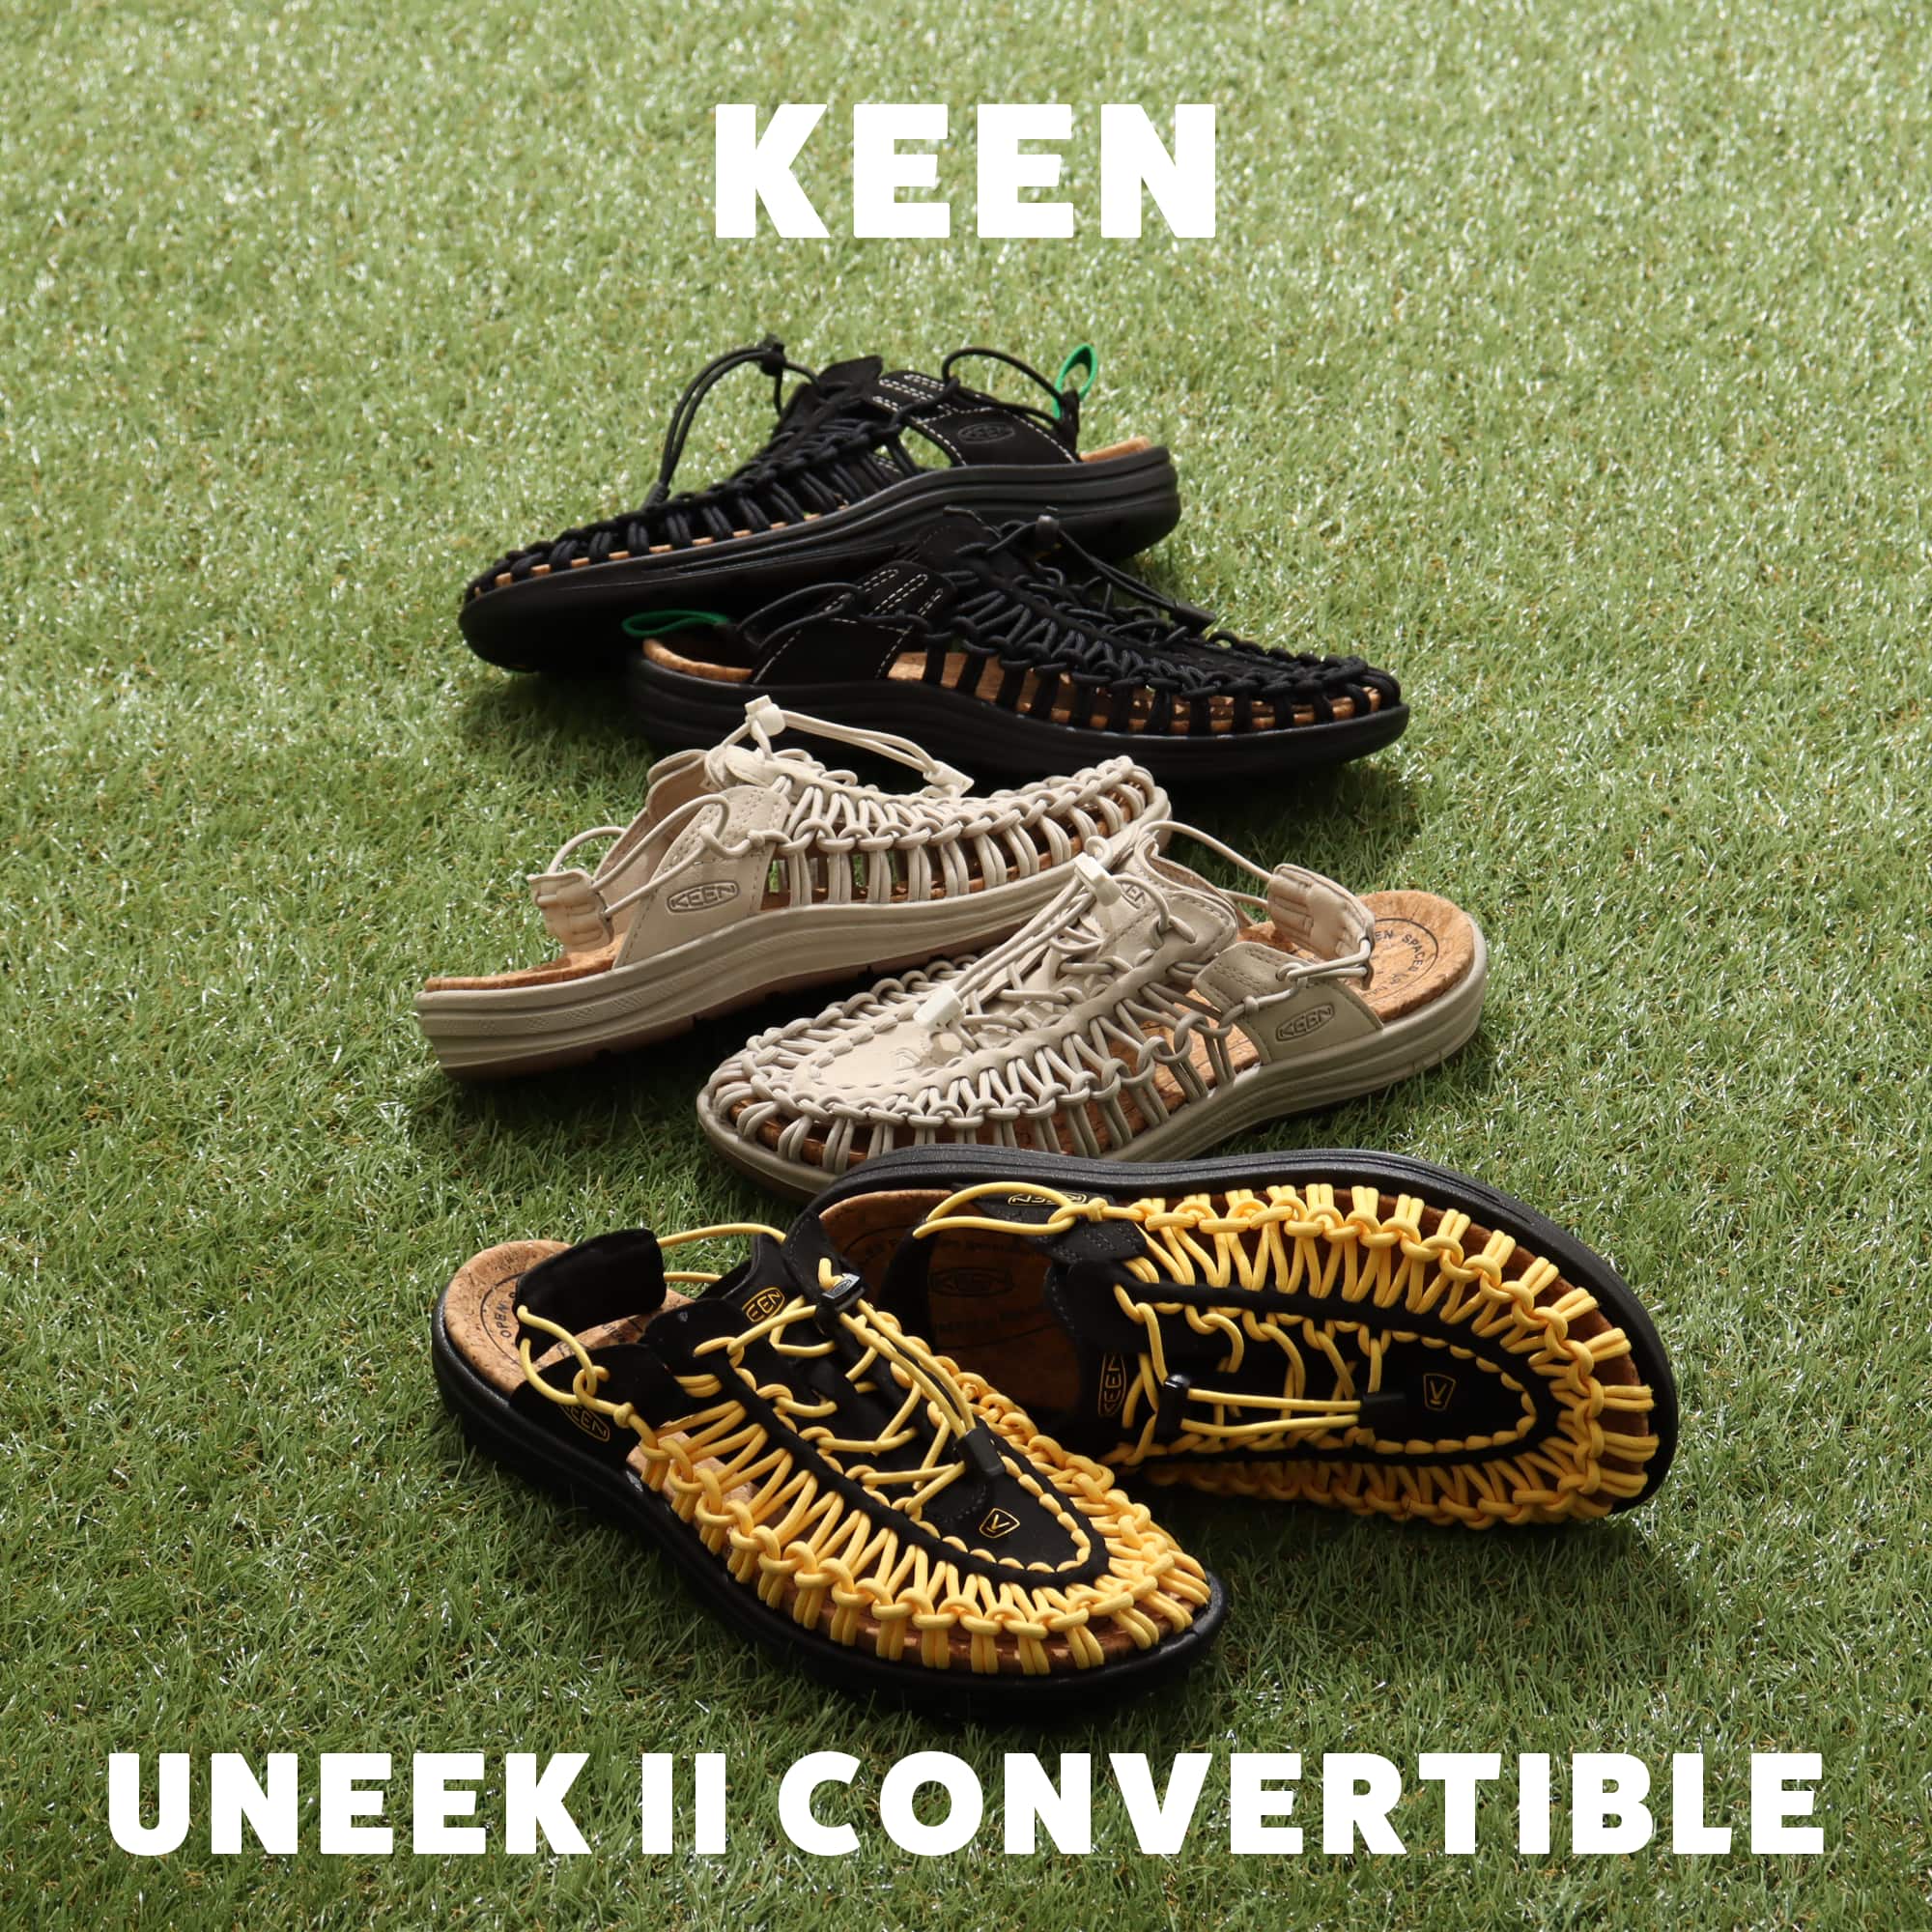 KEEN UNEEK II CONVERTIBLE